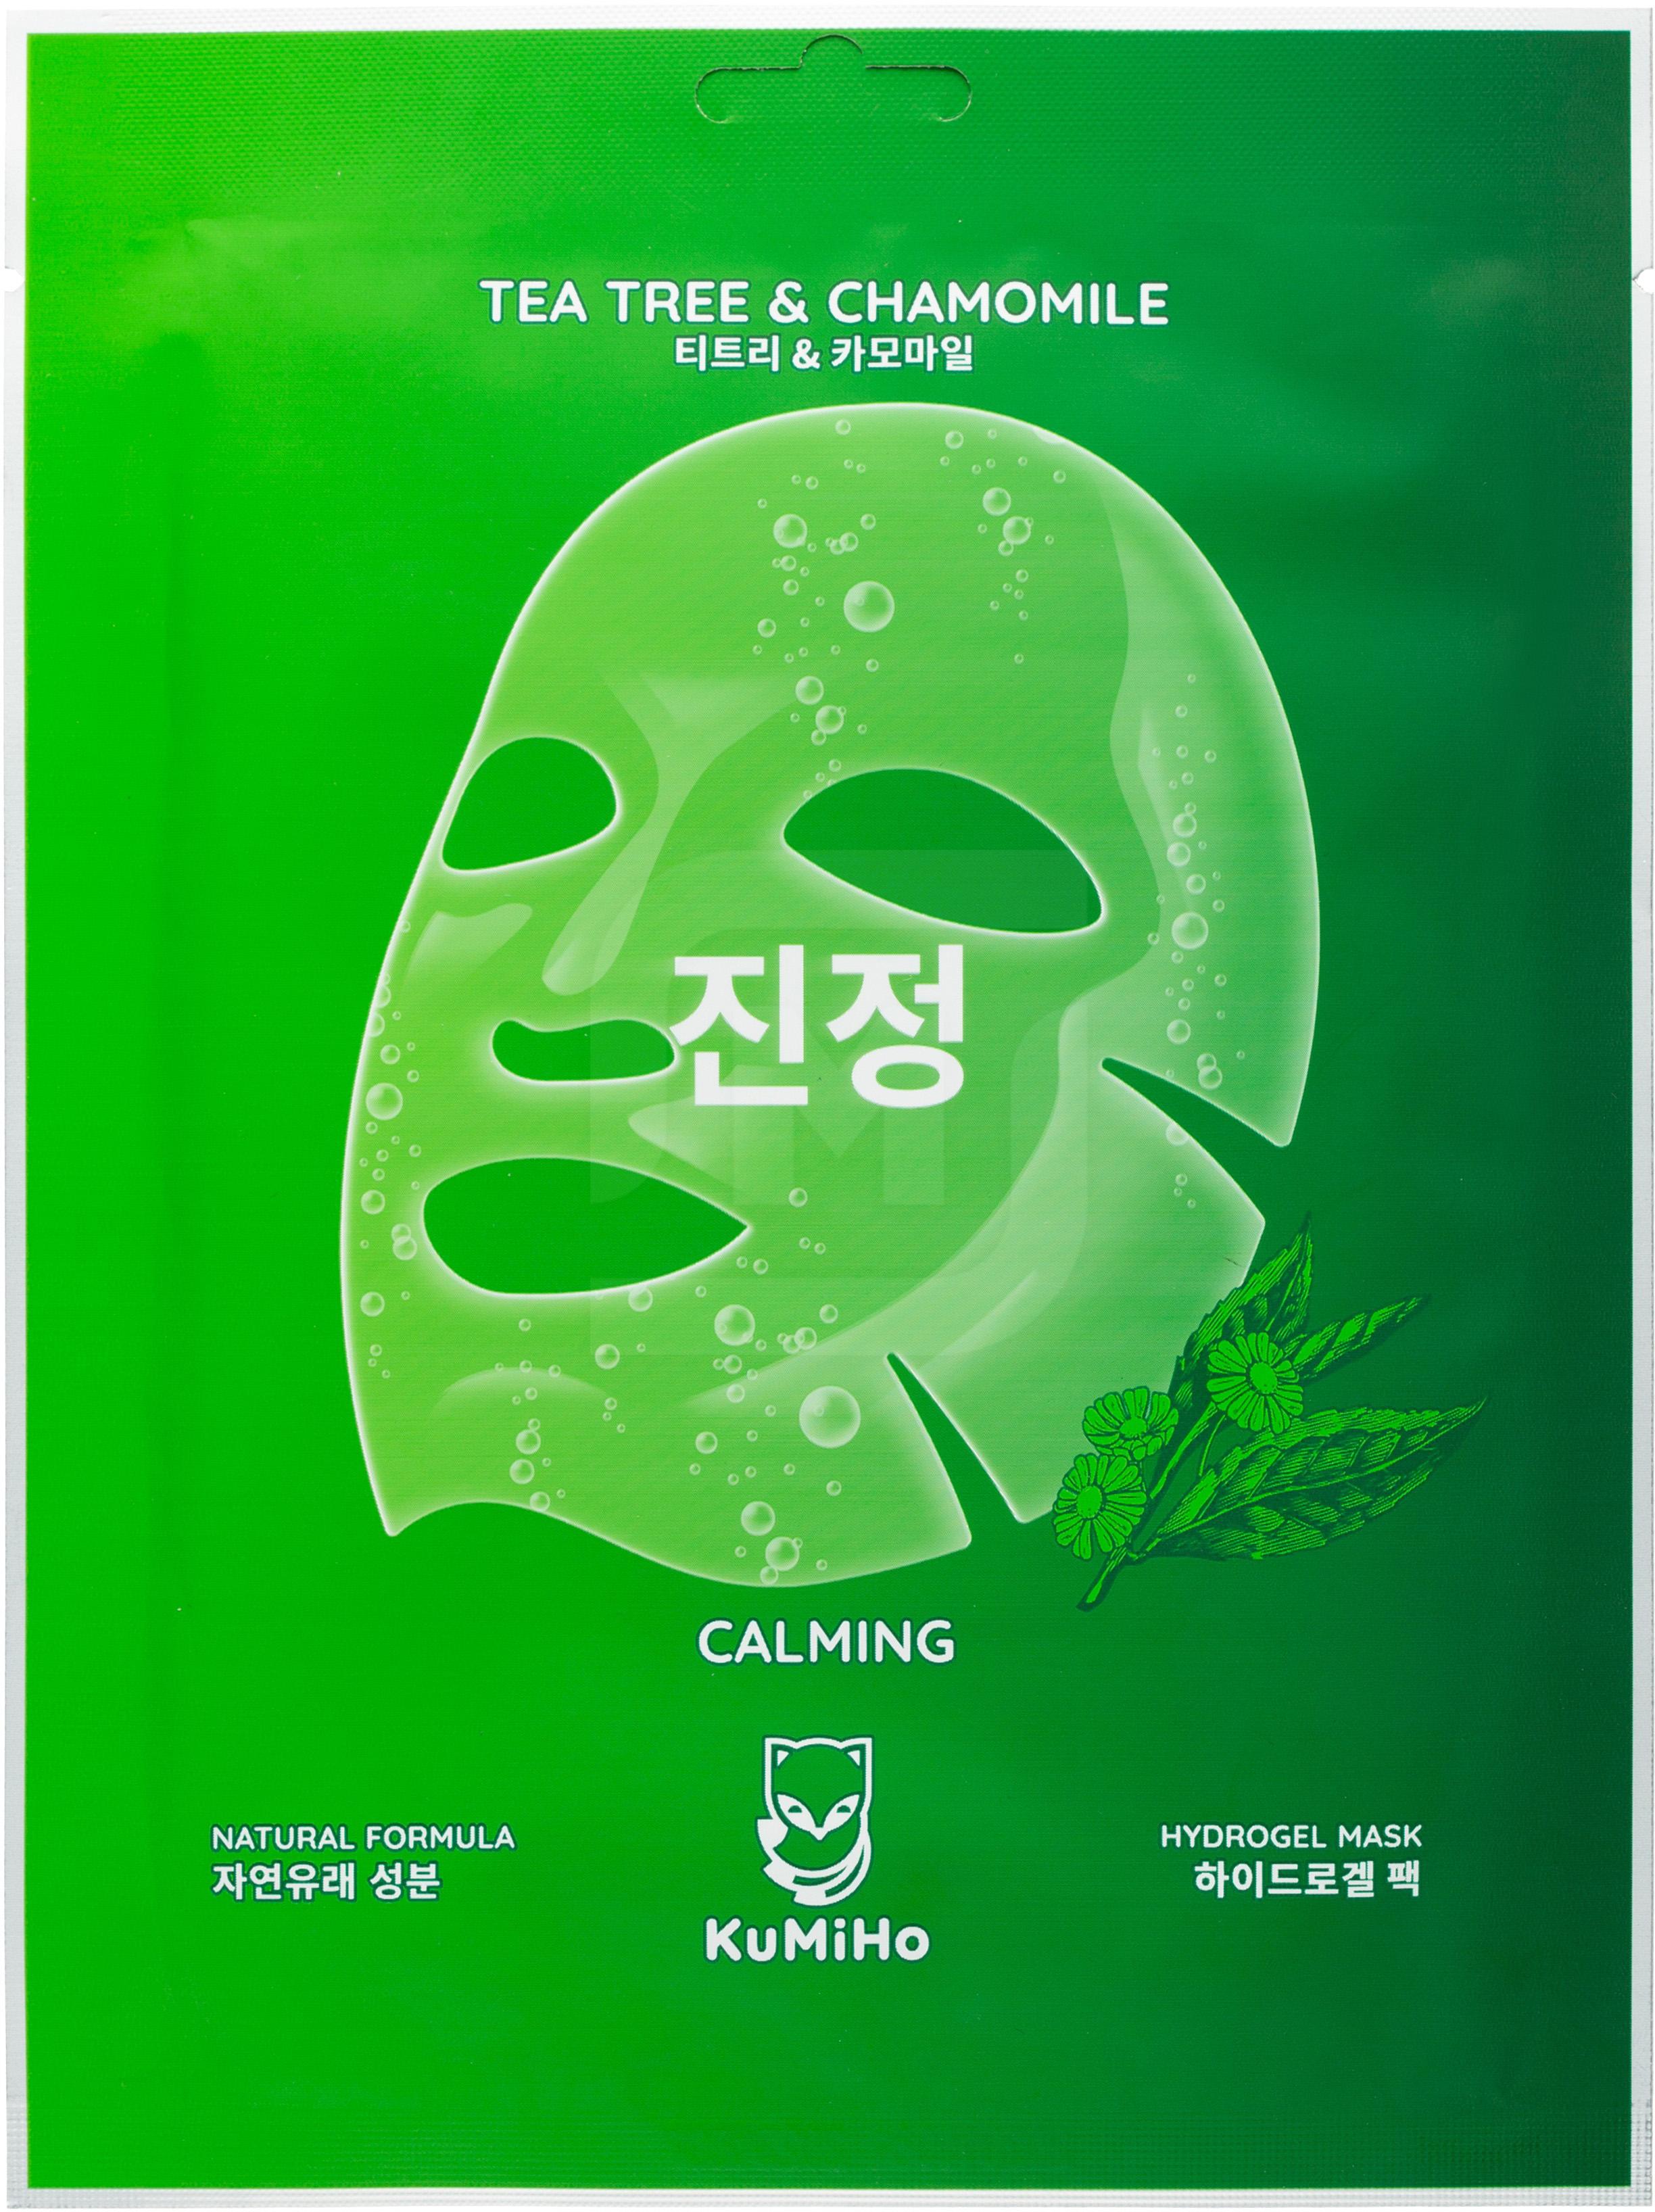 Kumiho маска для лица гидрогелевая с экстрактом чайного дерева. Гидрогелевая маска с экстрактом чайного дерева и ромашки. Кумихо маска гидрогелевая с экстрактом чайного дерева и ромашки. Kumiho маска тканевая для лица с вна кислотами.